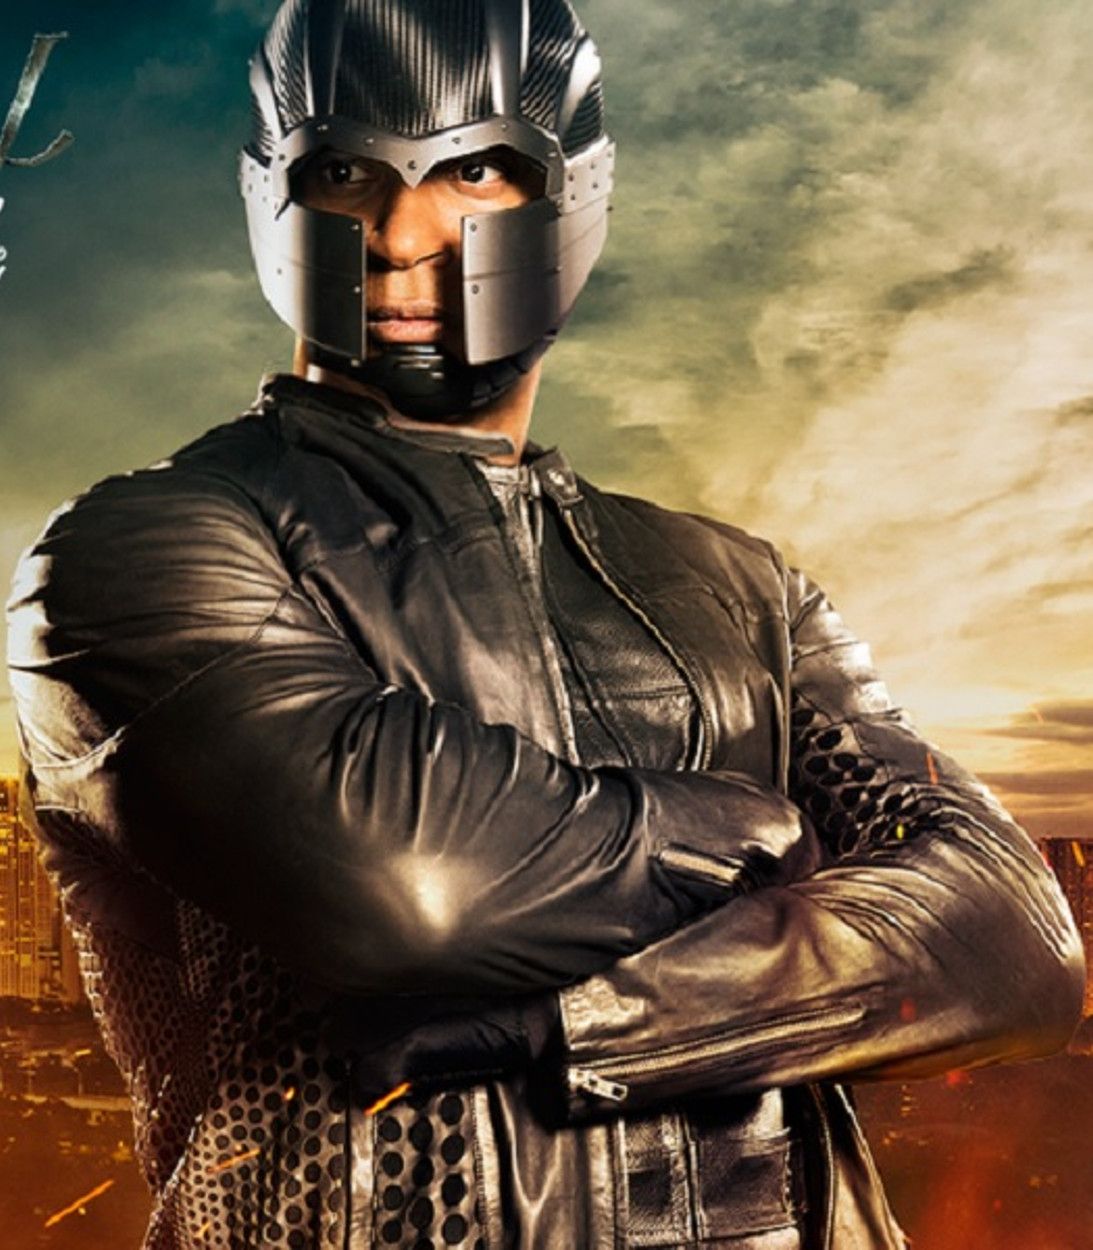 Arrow John Diggle Digg in Spartan armor vertical